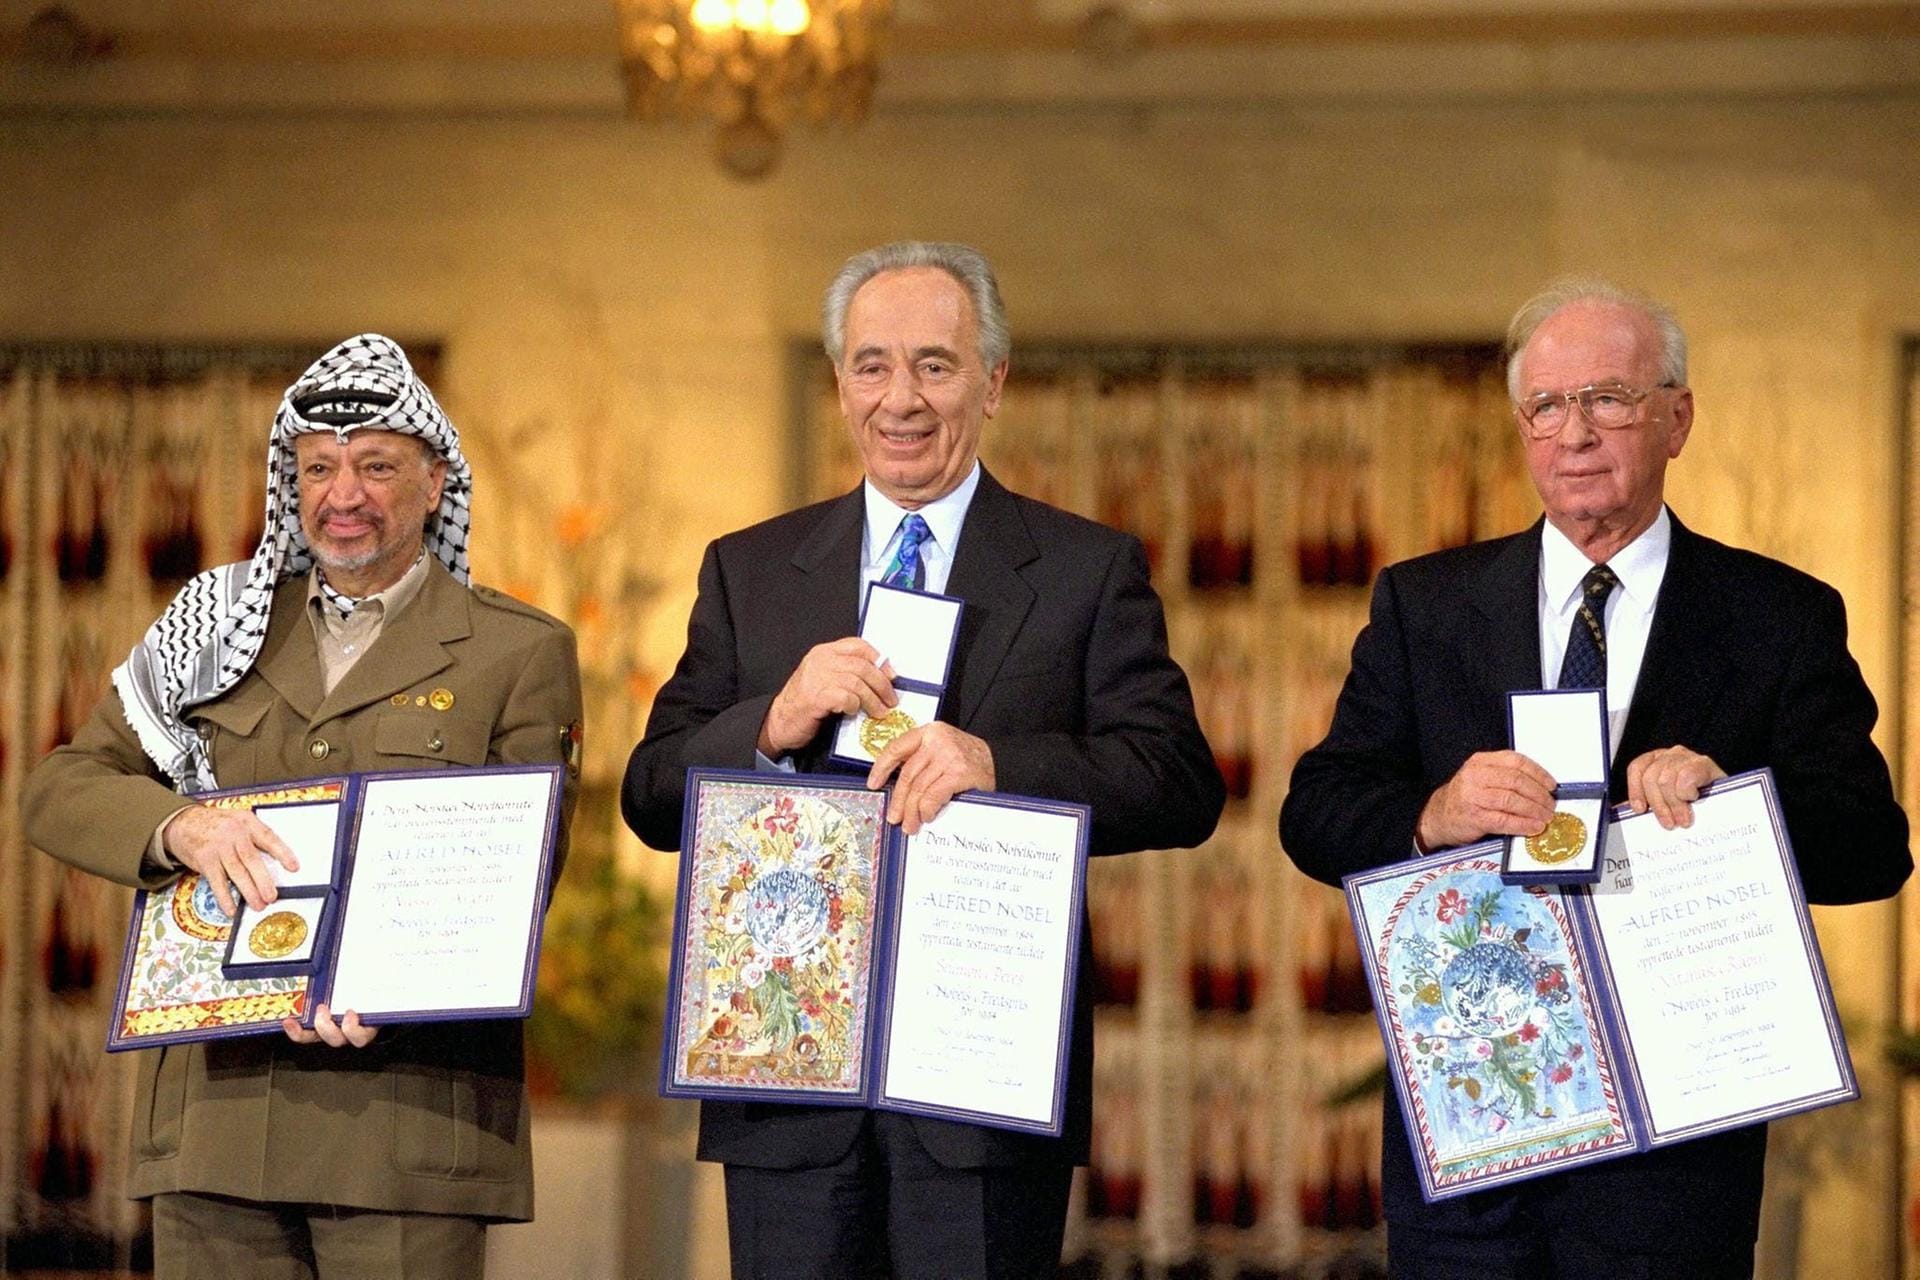 In den Neunzigerjahren wurde auch ein Frieden zwischen Israel und den Palästinensern denkbar. Die sogenannten Oslo-Abkommen schienen den Palästinensern nach Jahrzehnten zumindest zum Teil eine Autonomie einzuräumen. Jassir Arafat von der PLO, Israels Außenminister Schimon Peres und der israelische Regierungschef Jichthak Rabin erhielten dafür 1994 den Friedensnobelpreis.